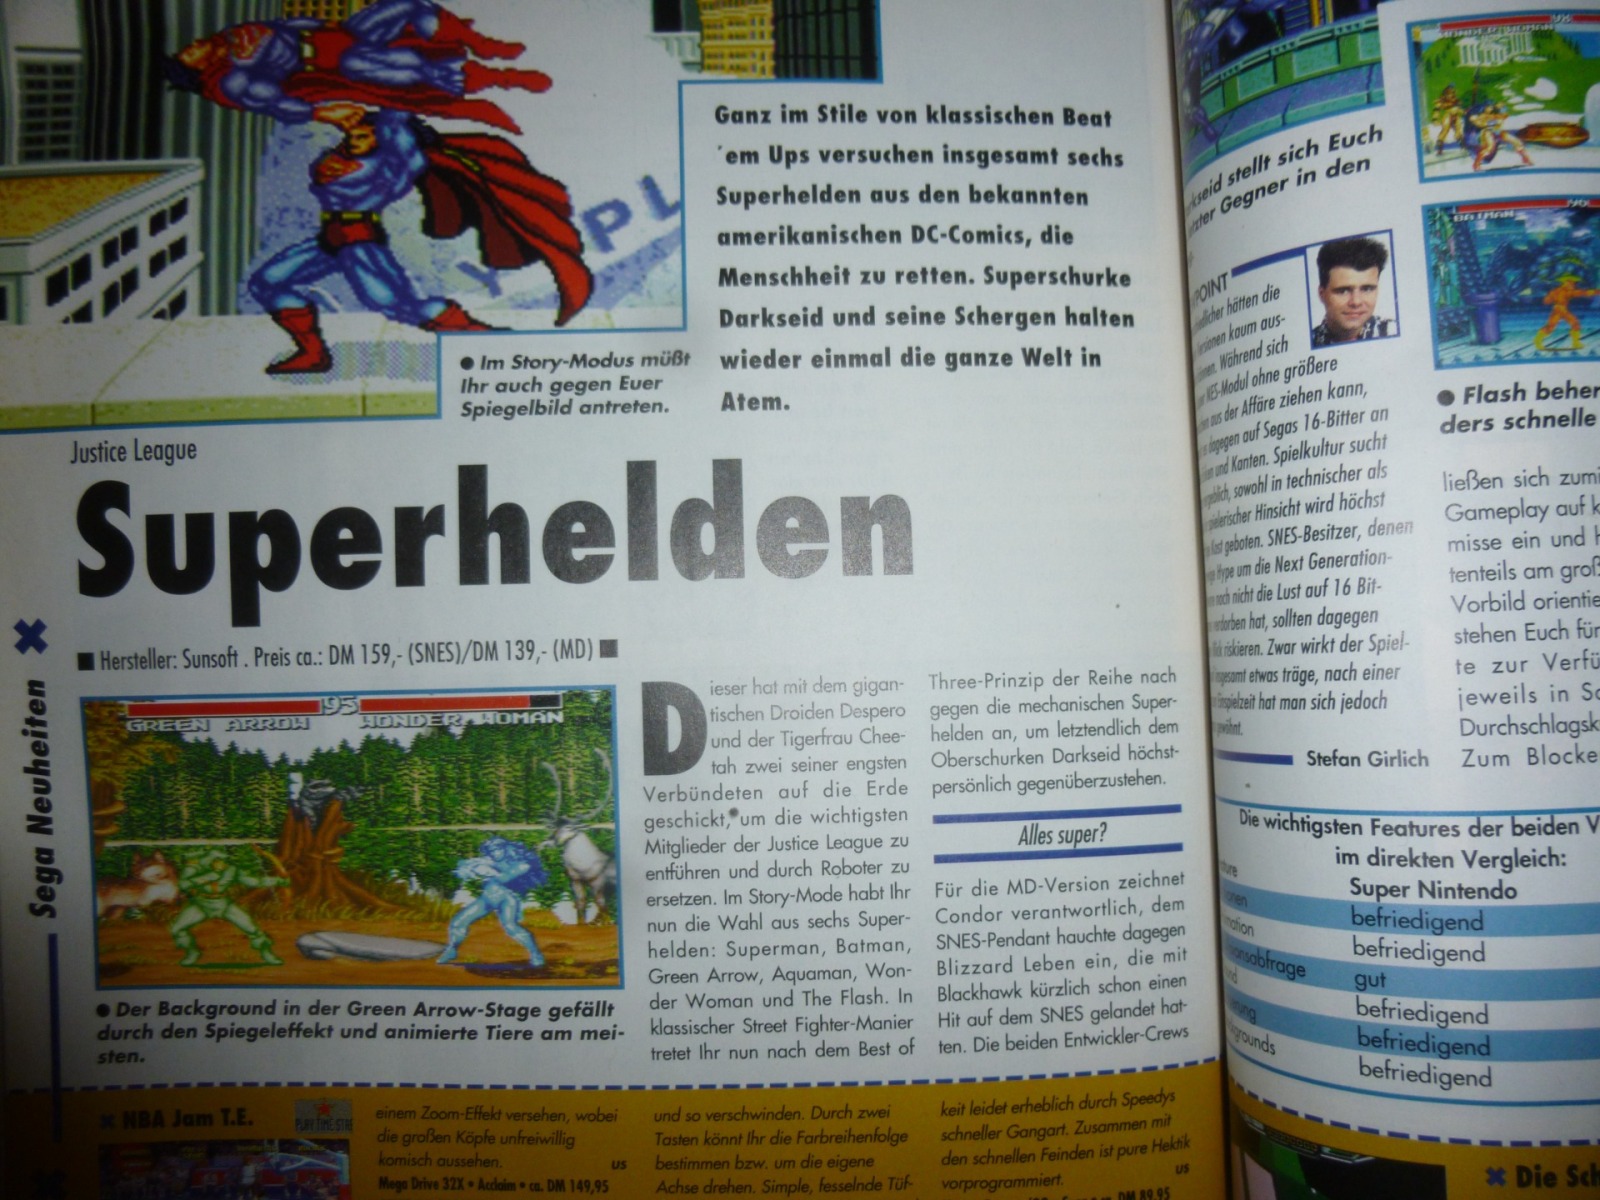 Play Time - Das Computer- und Videospiele-Magazin - Ausgabe 7/95 1995 13